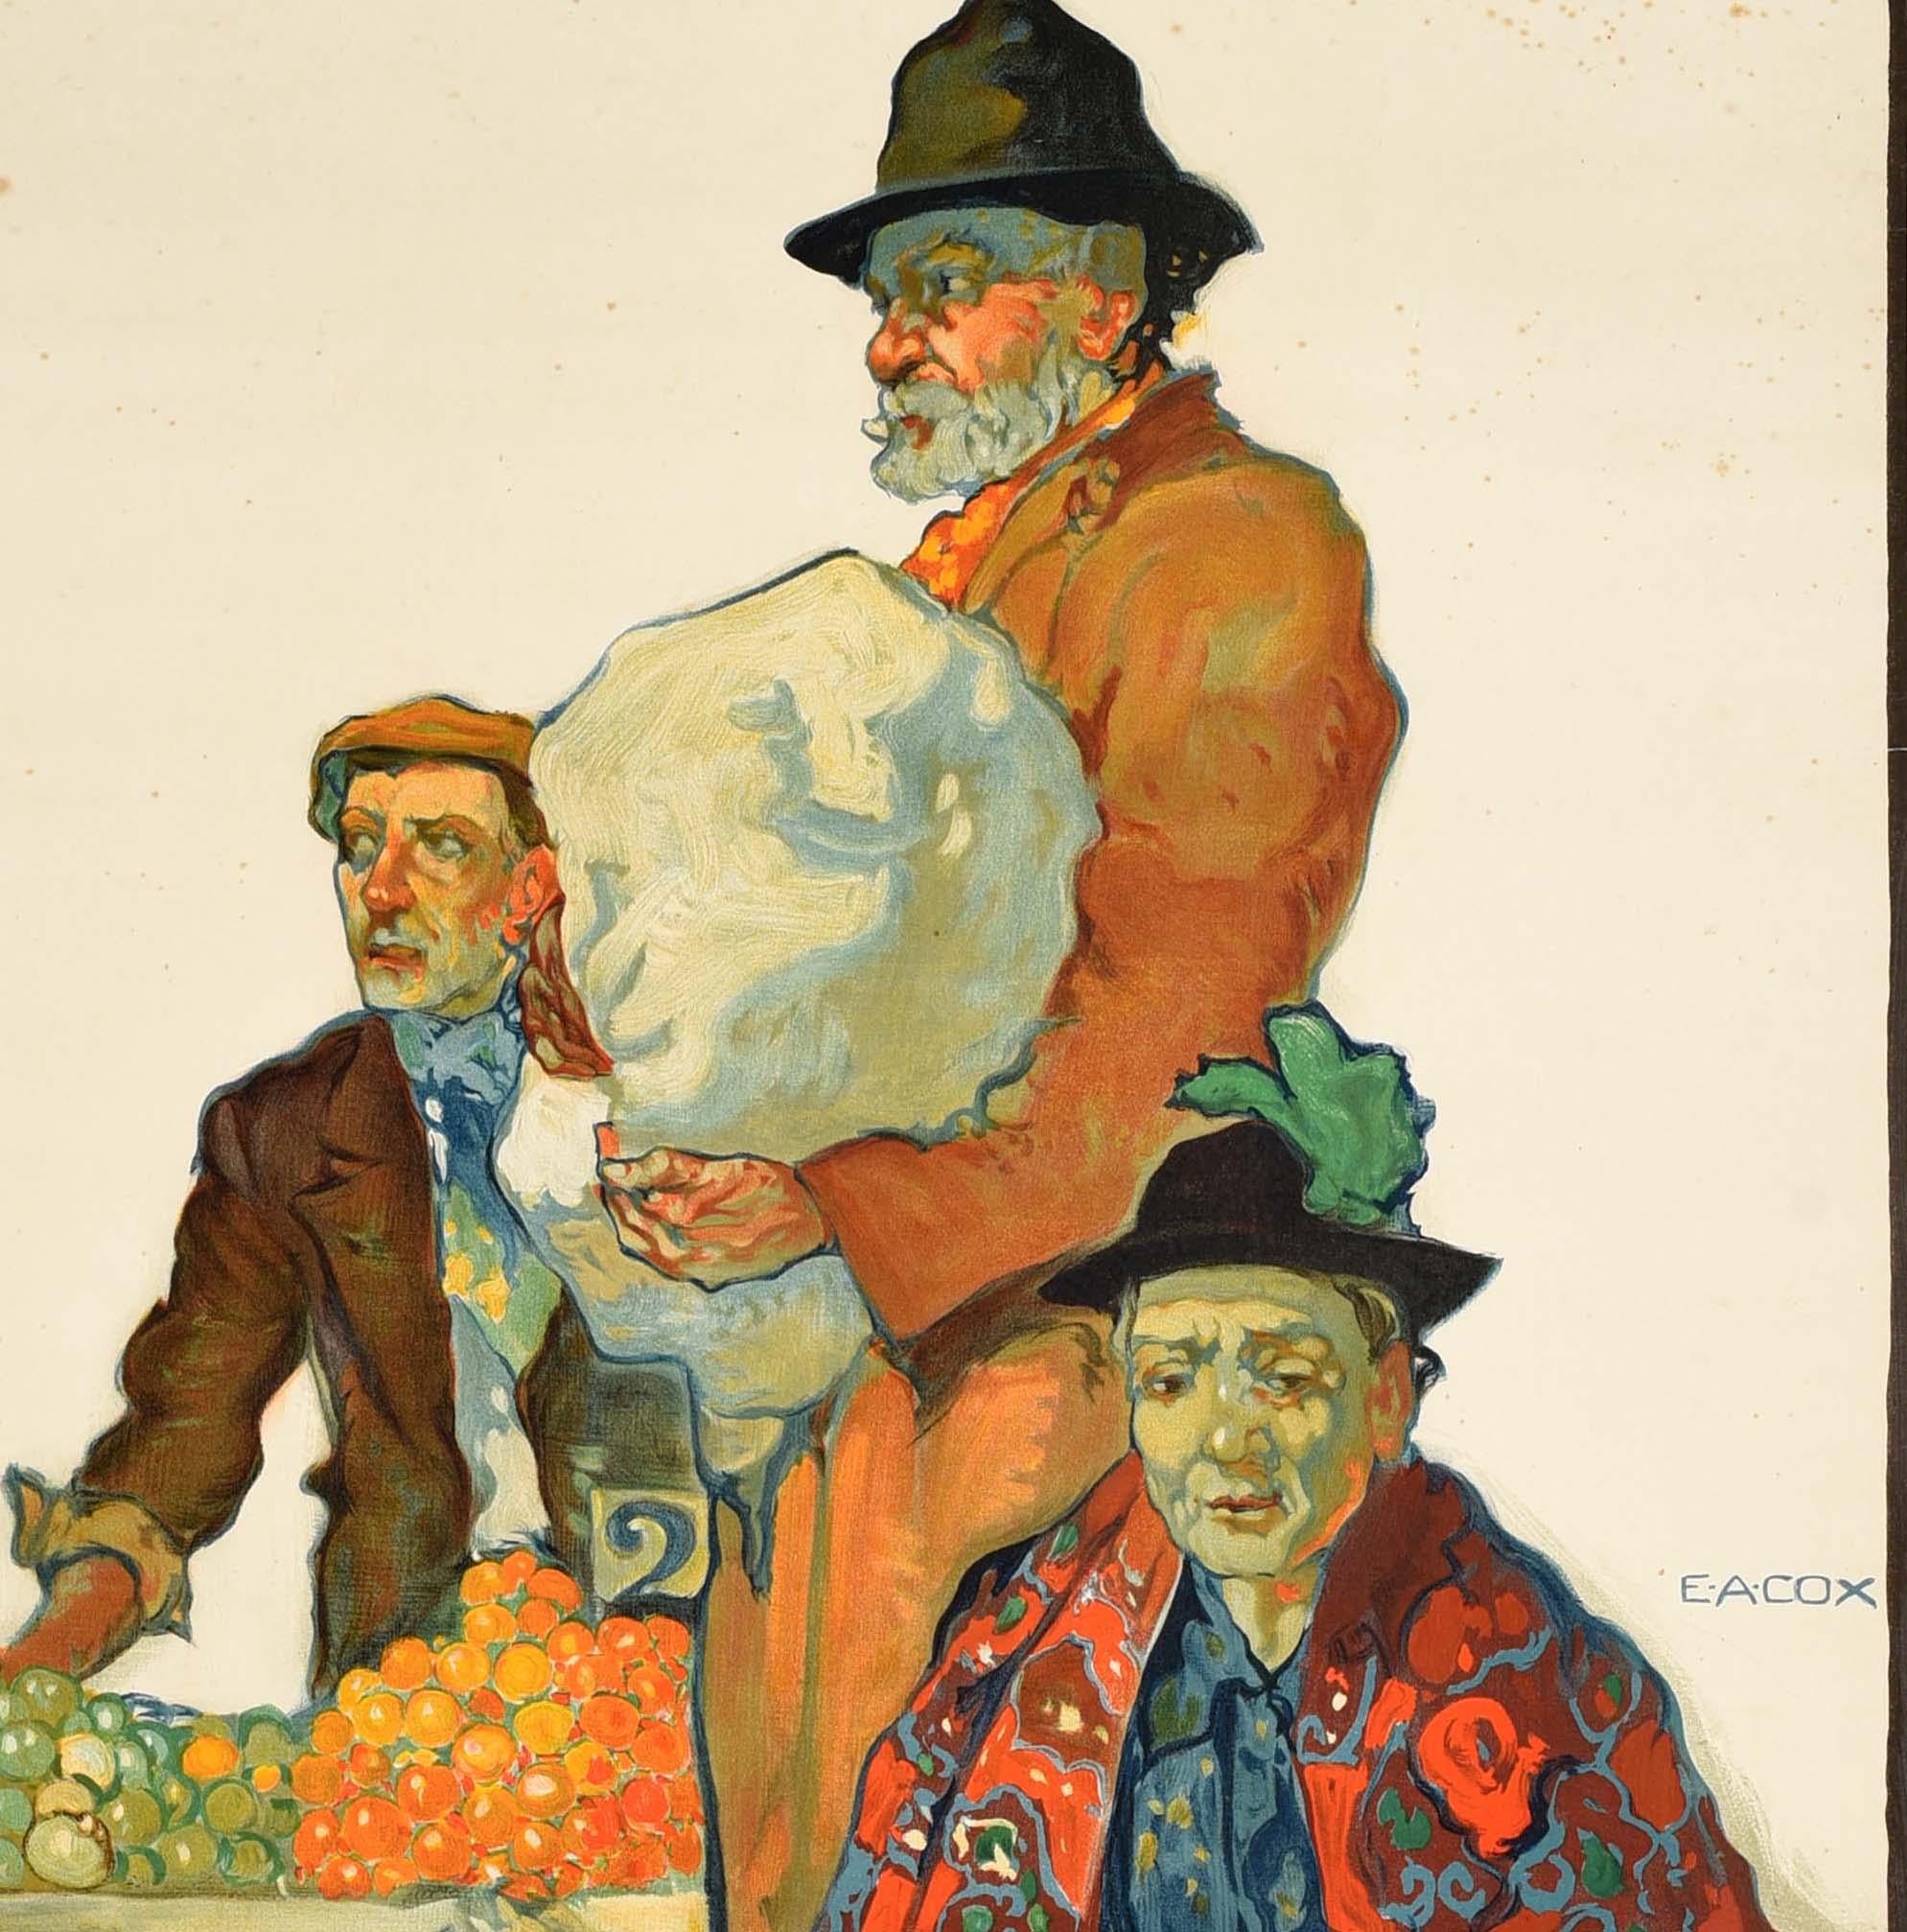 Affiche de voyage originale ancienne pour Watford présentant une grande illustration de vendeurs de marché par le peintre et graphiste britannique Elijah Albert Cox (1876-1955) représentant un homme debout entre un marchand de fruits et légumes